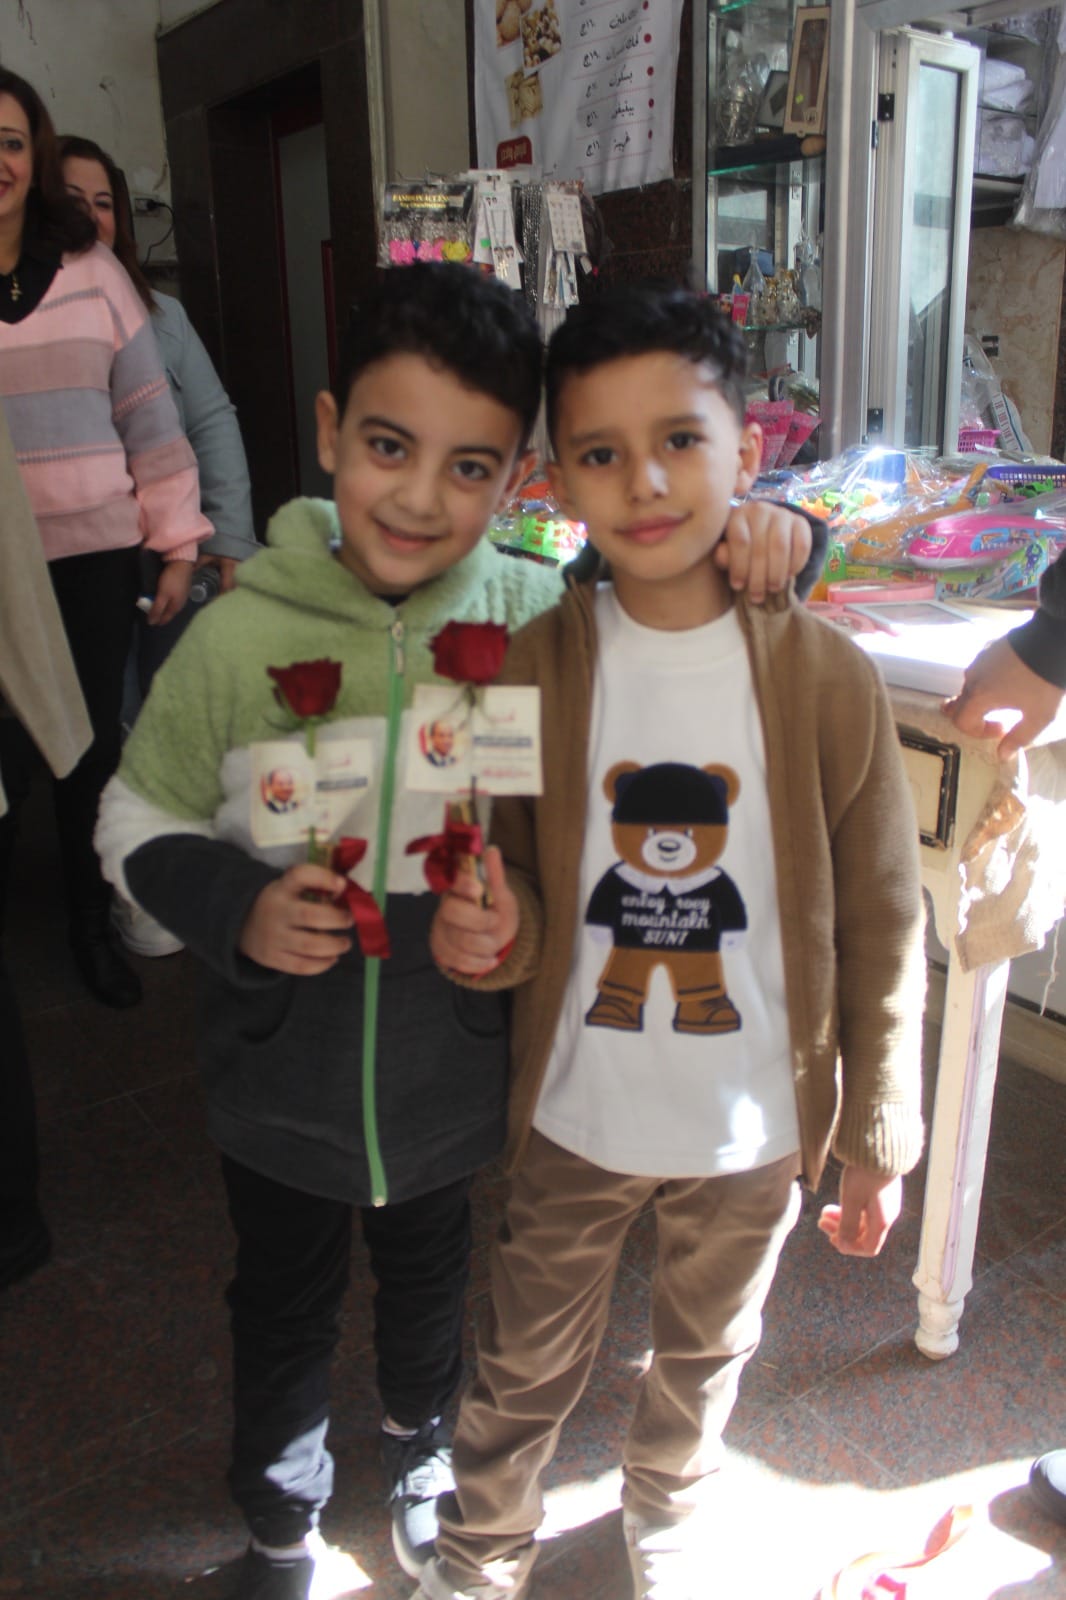 ويتم توزيع الورود والشوكولاتة وصورة الرئيس على الأطفال